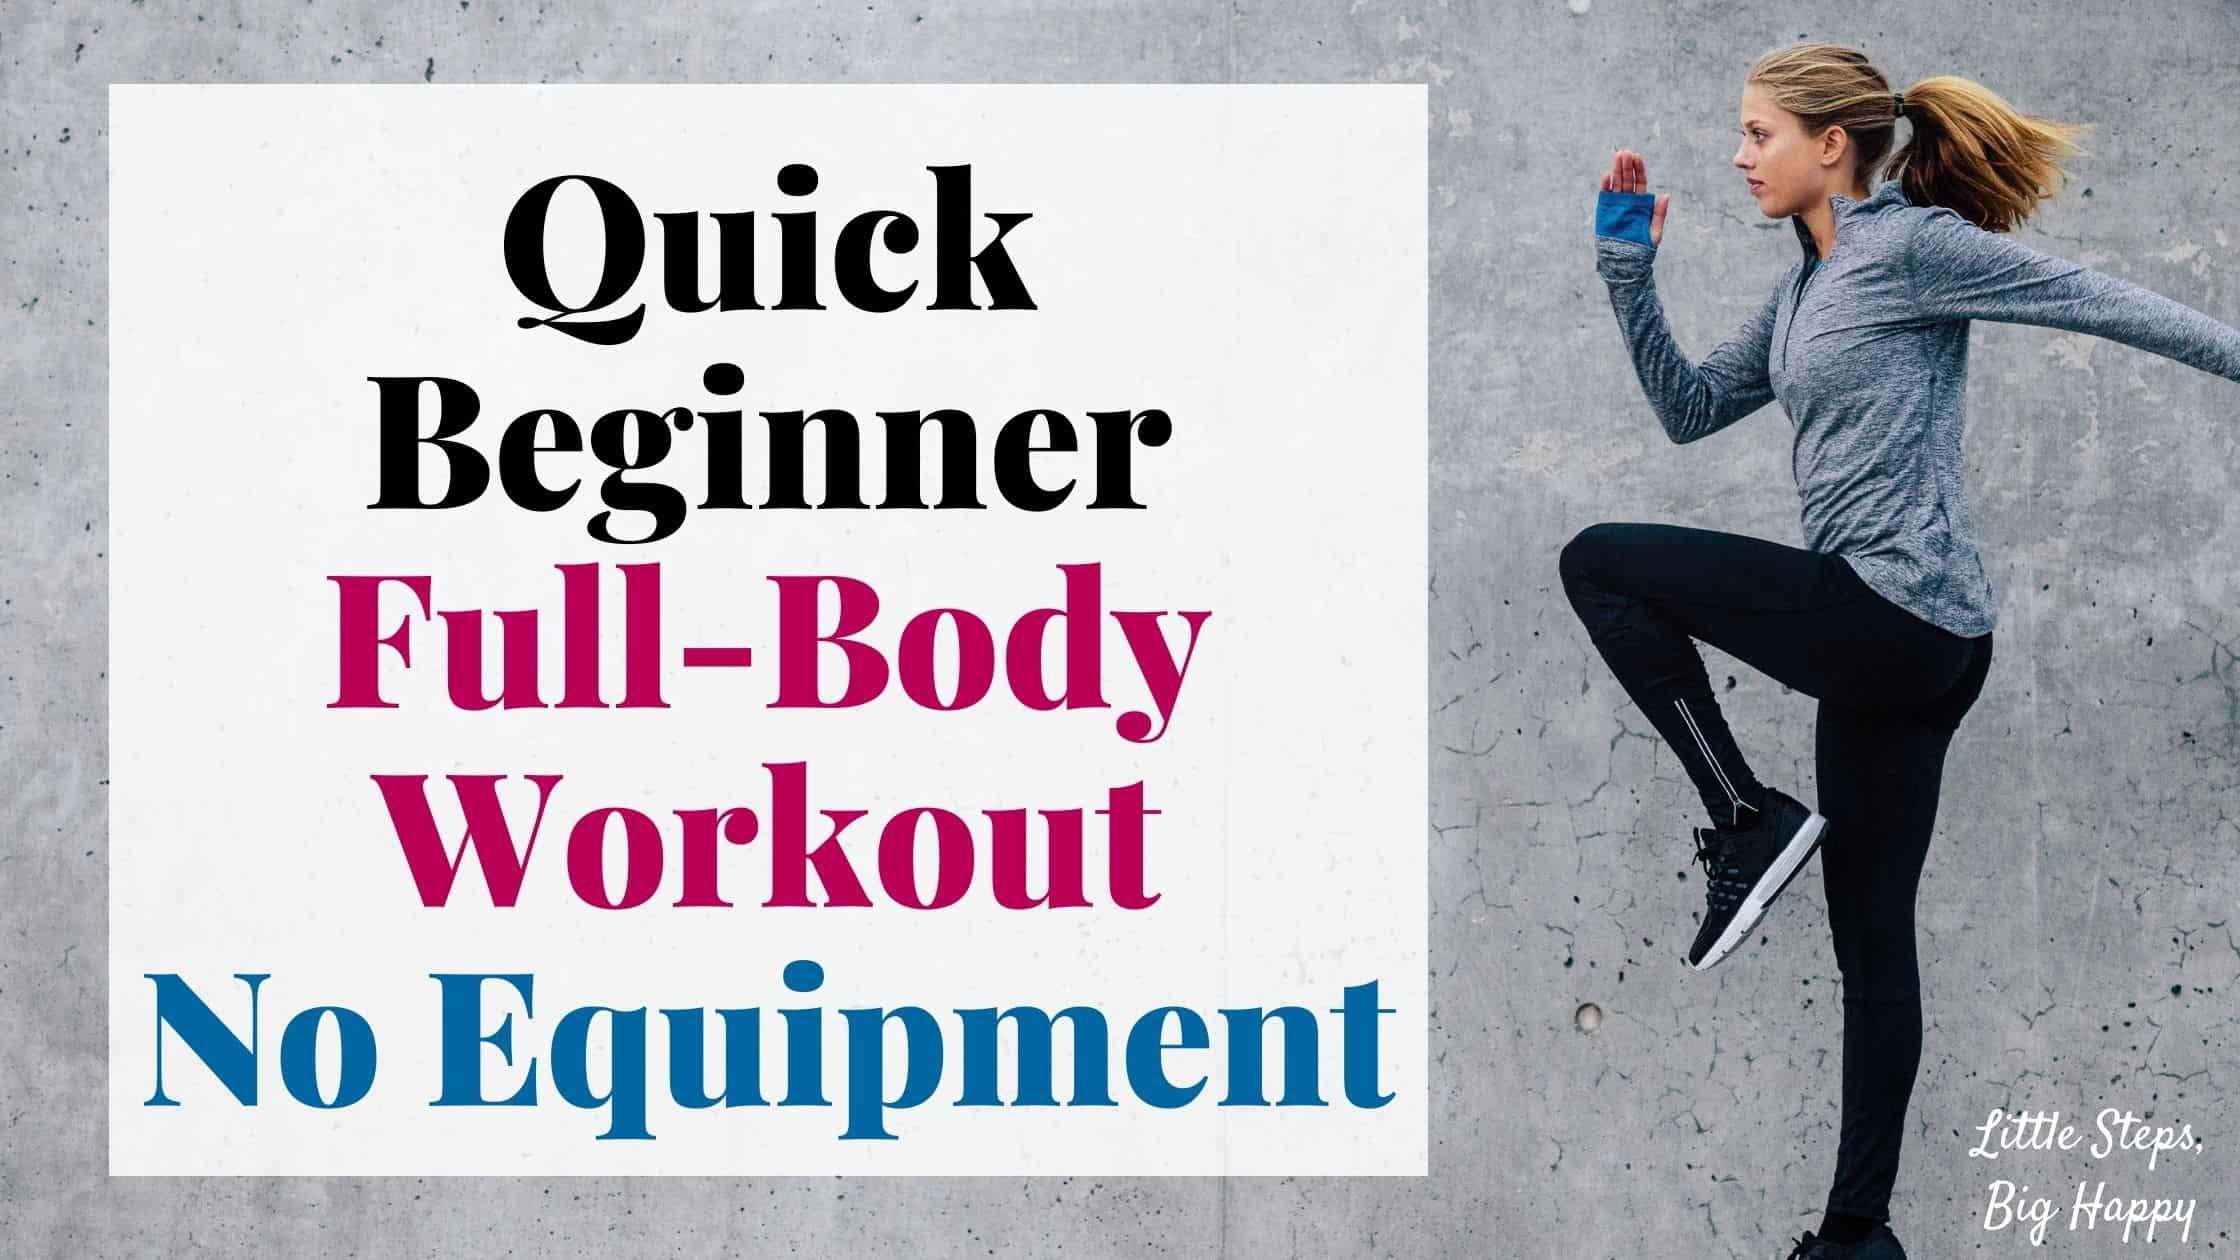 Quick Beginner Full-Body Workout - No Equipment